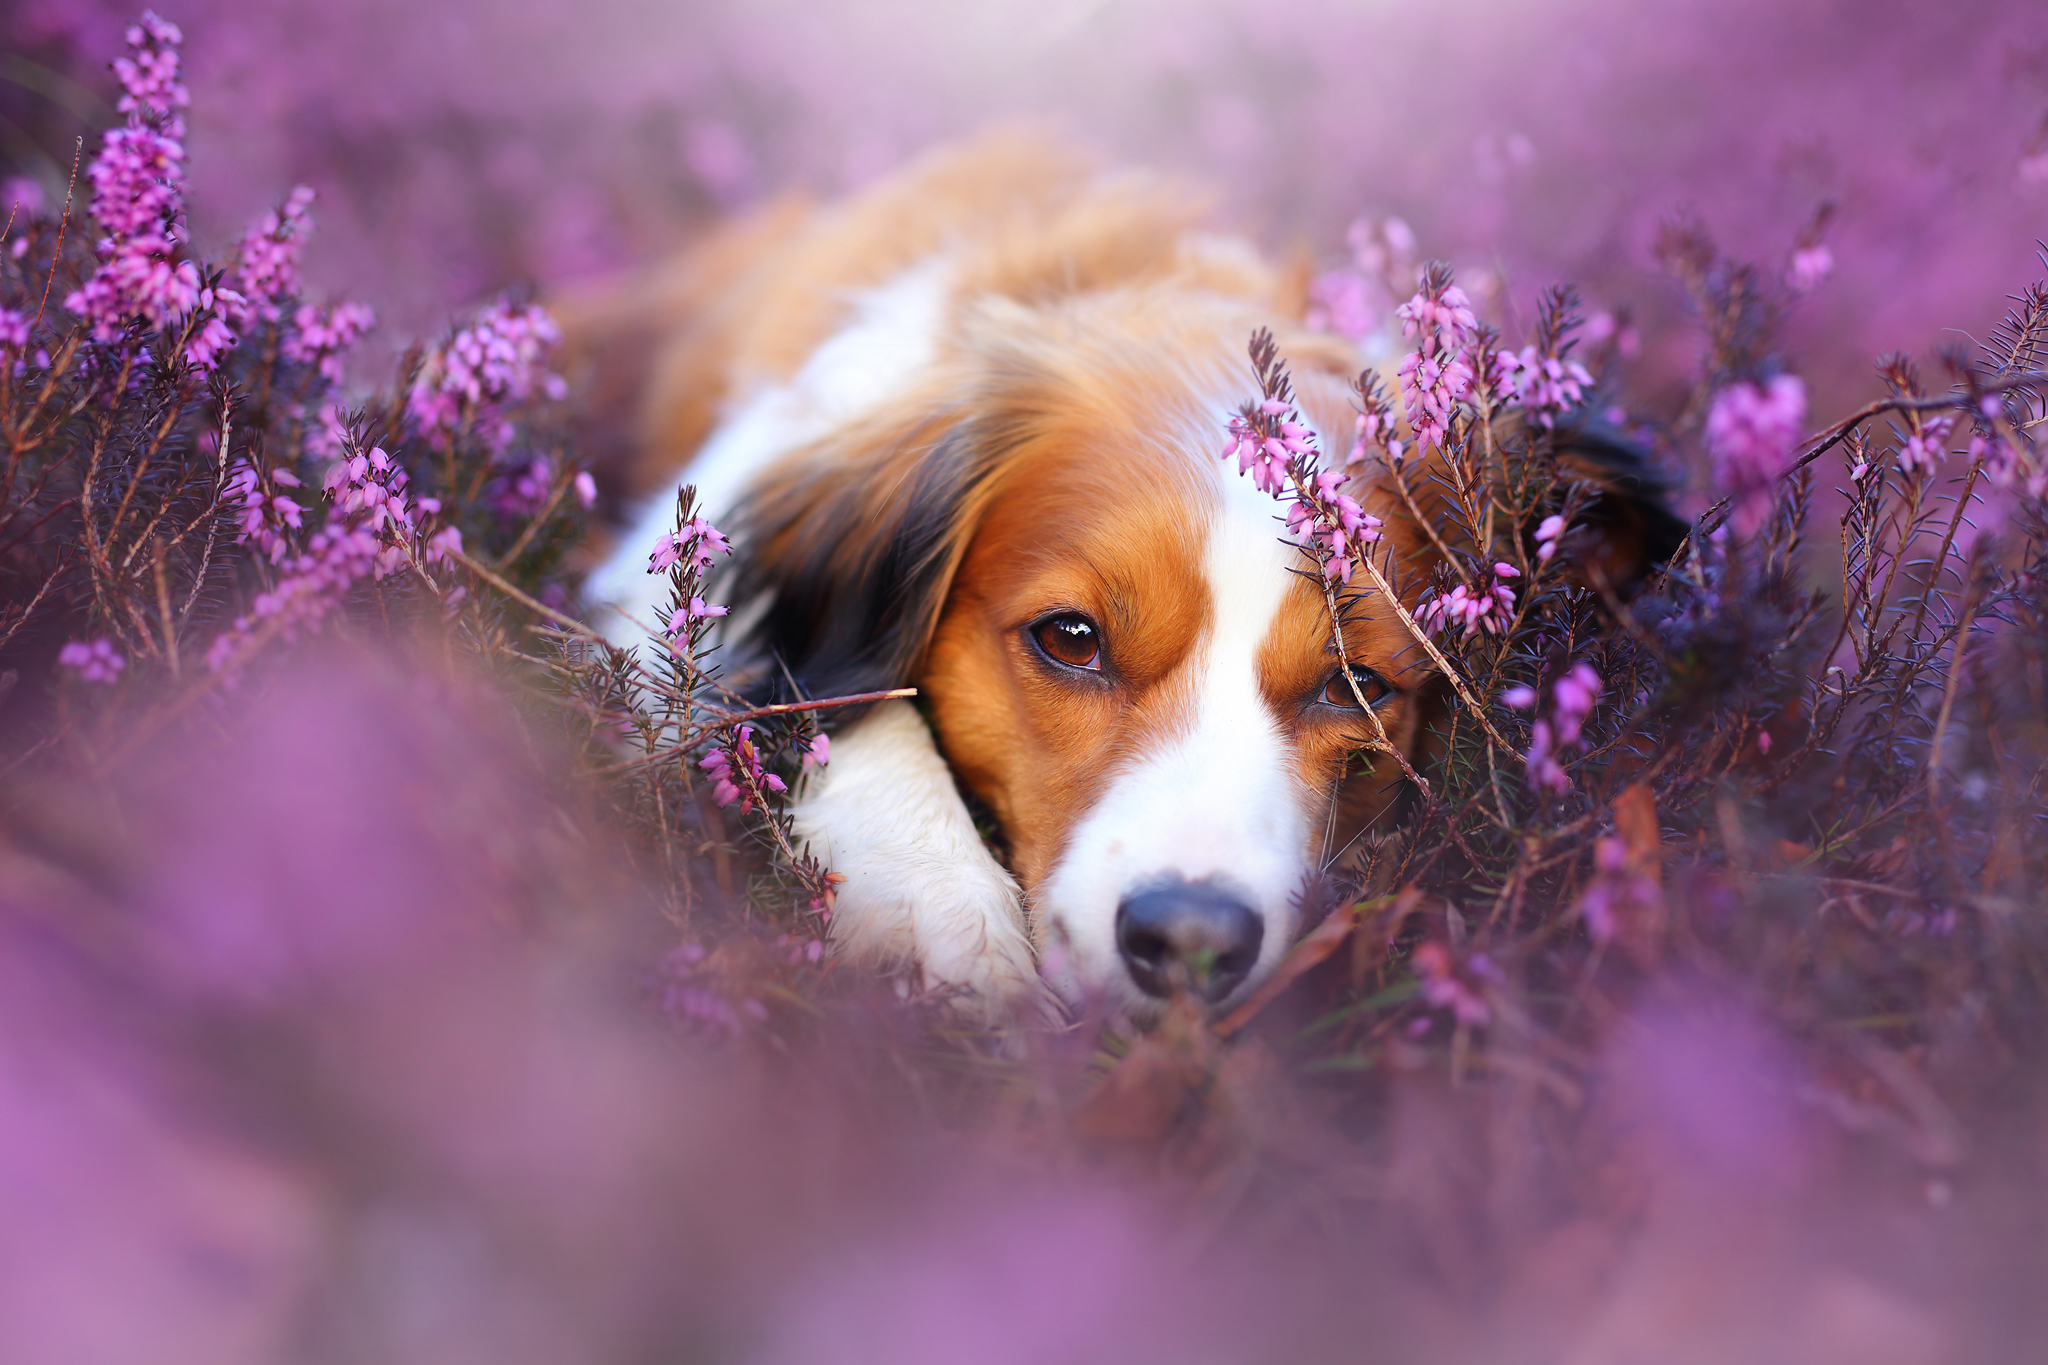 Cute Dog in Flower Field